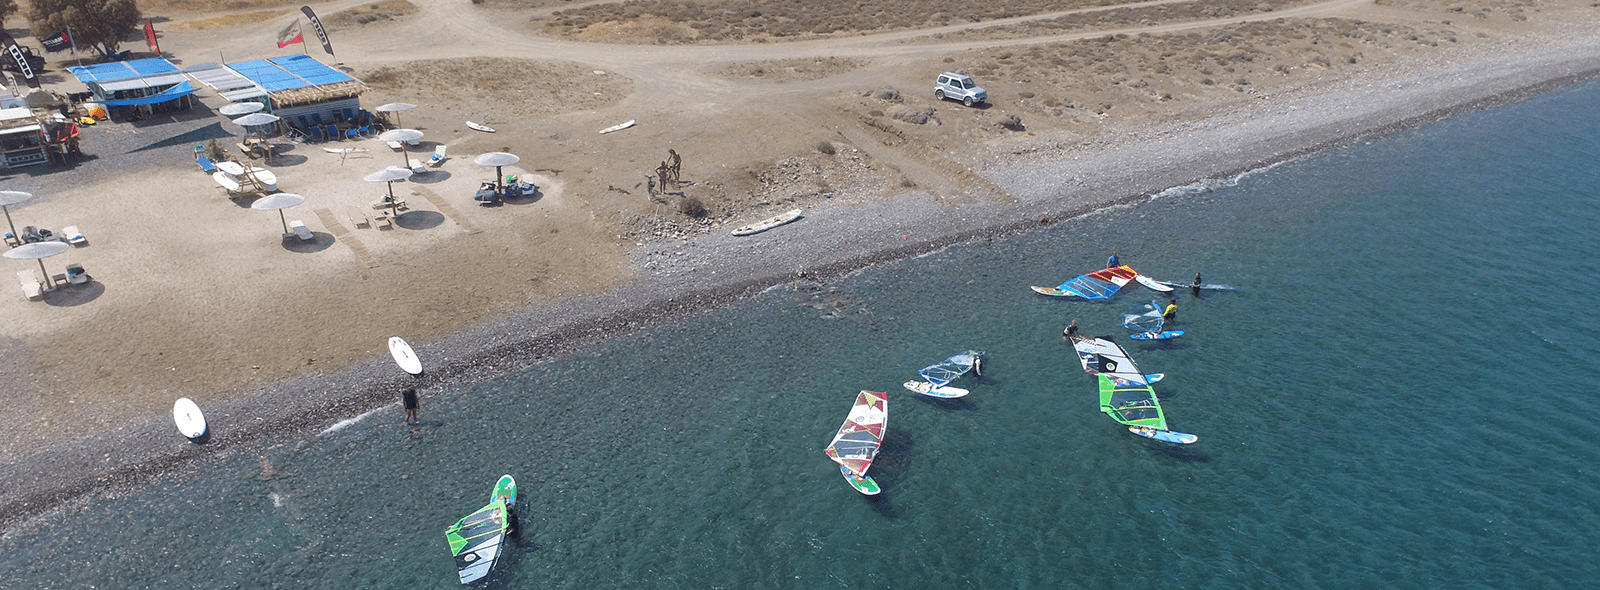 Bienvenue au Big Blue Center pour faire du kitesurf et du windsurf à Kos en Grèce